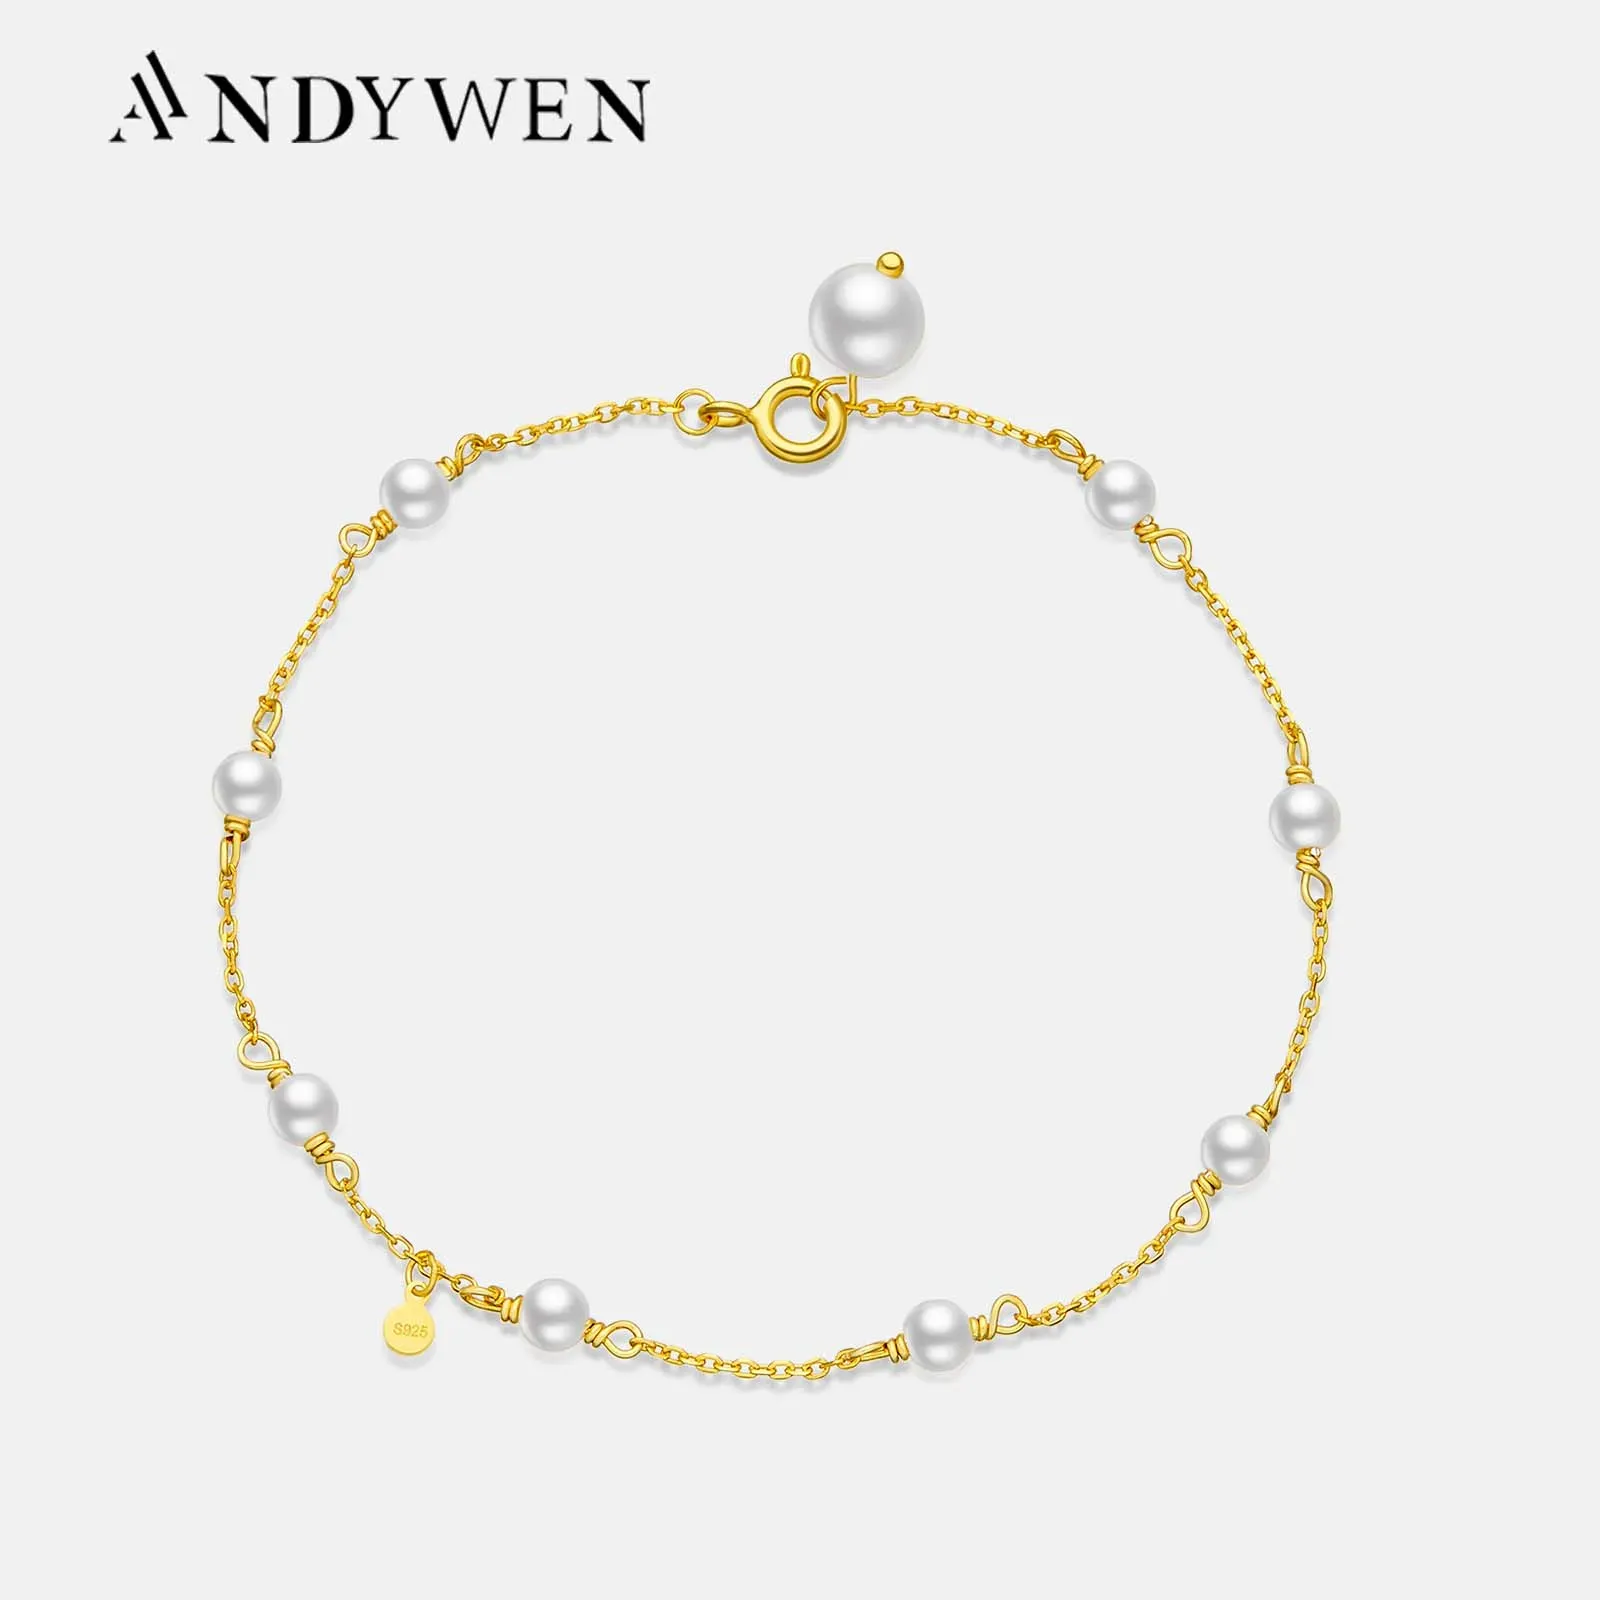 Brins Andywen 100% 925 Bracelet de chaîne de perle en argent sterling 4 mm